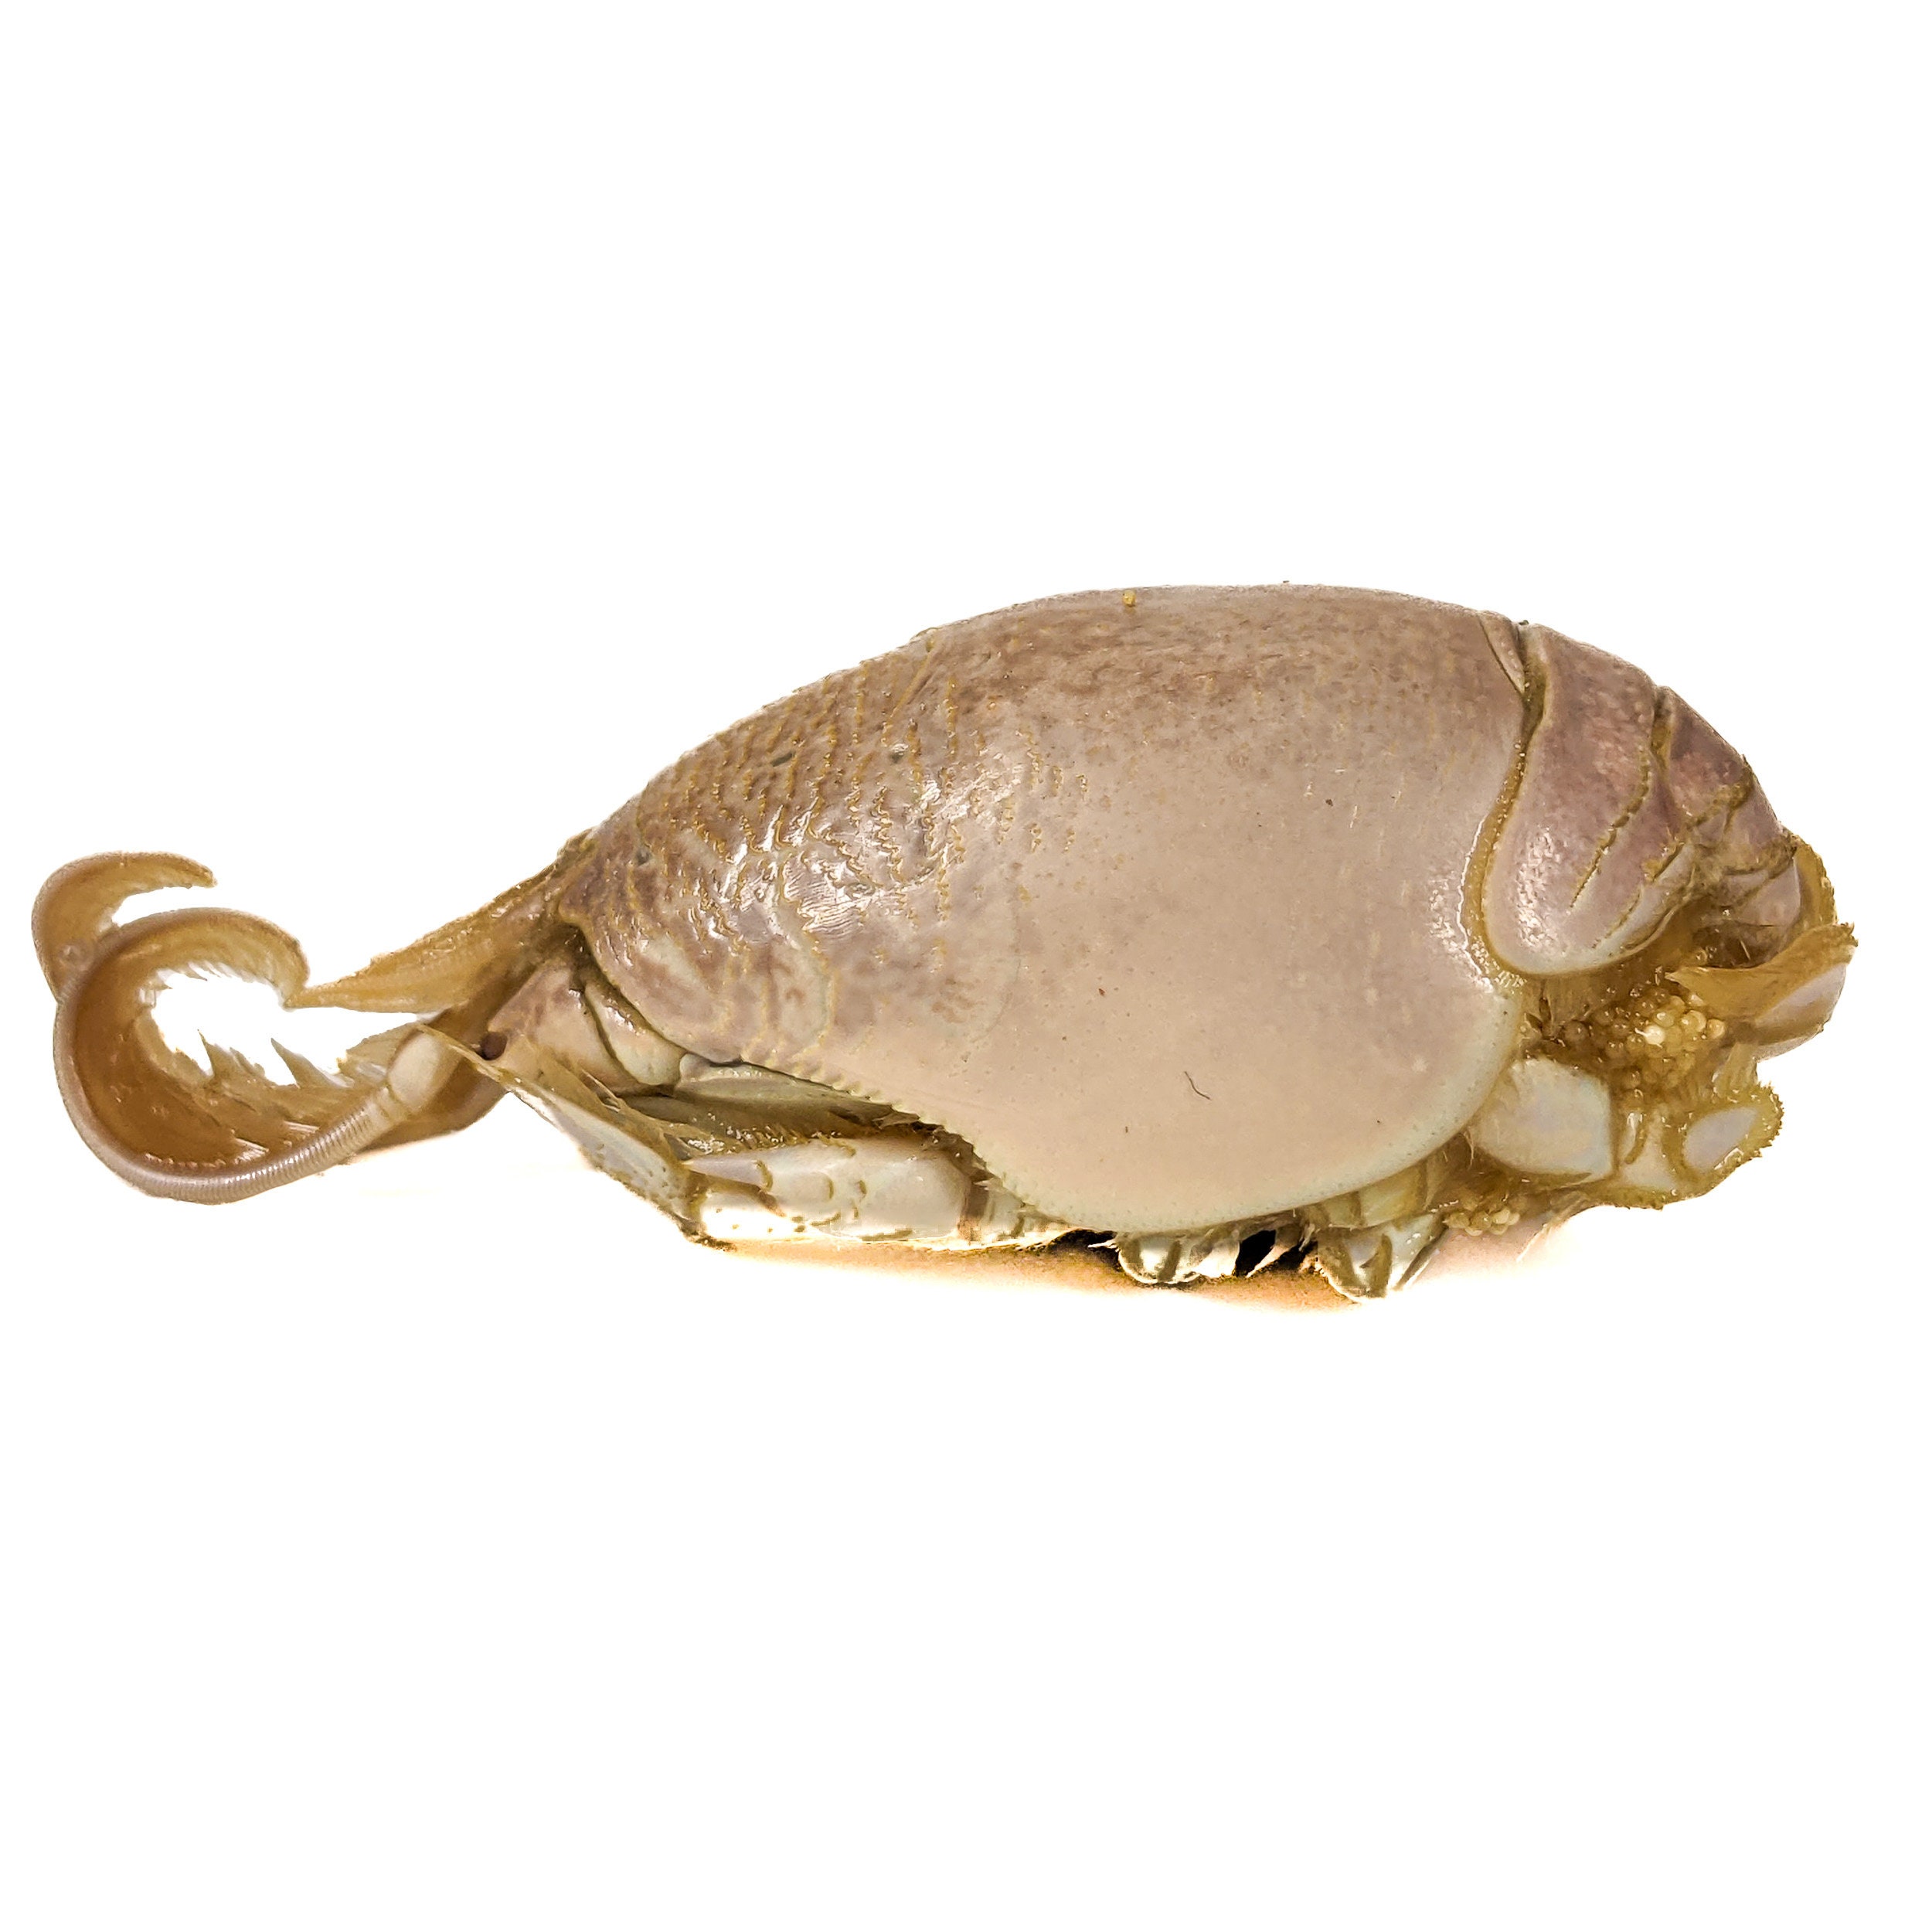 MC2 Mole Crab Wet Specimen Emerita Analoga Oddities Curiosities